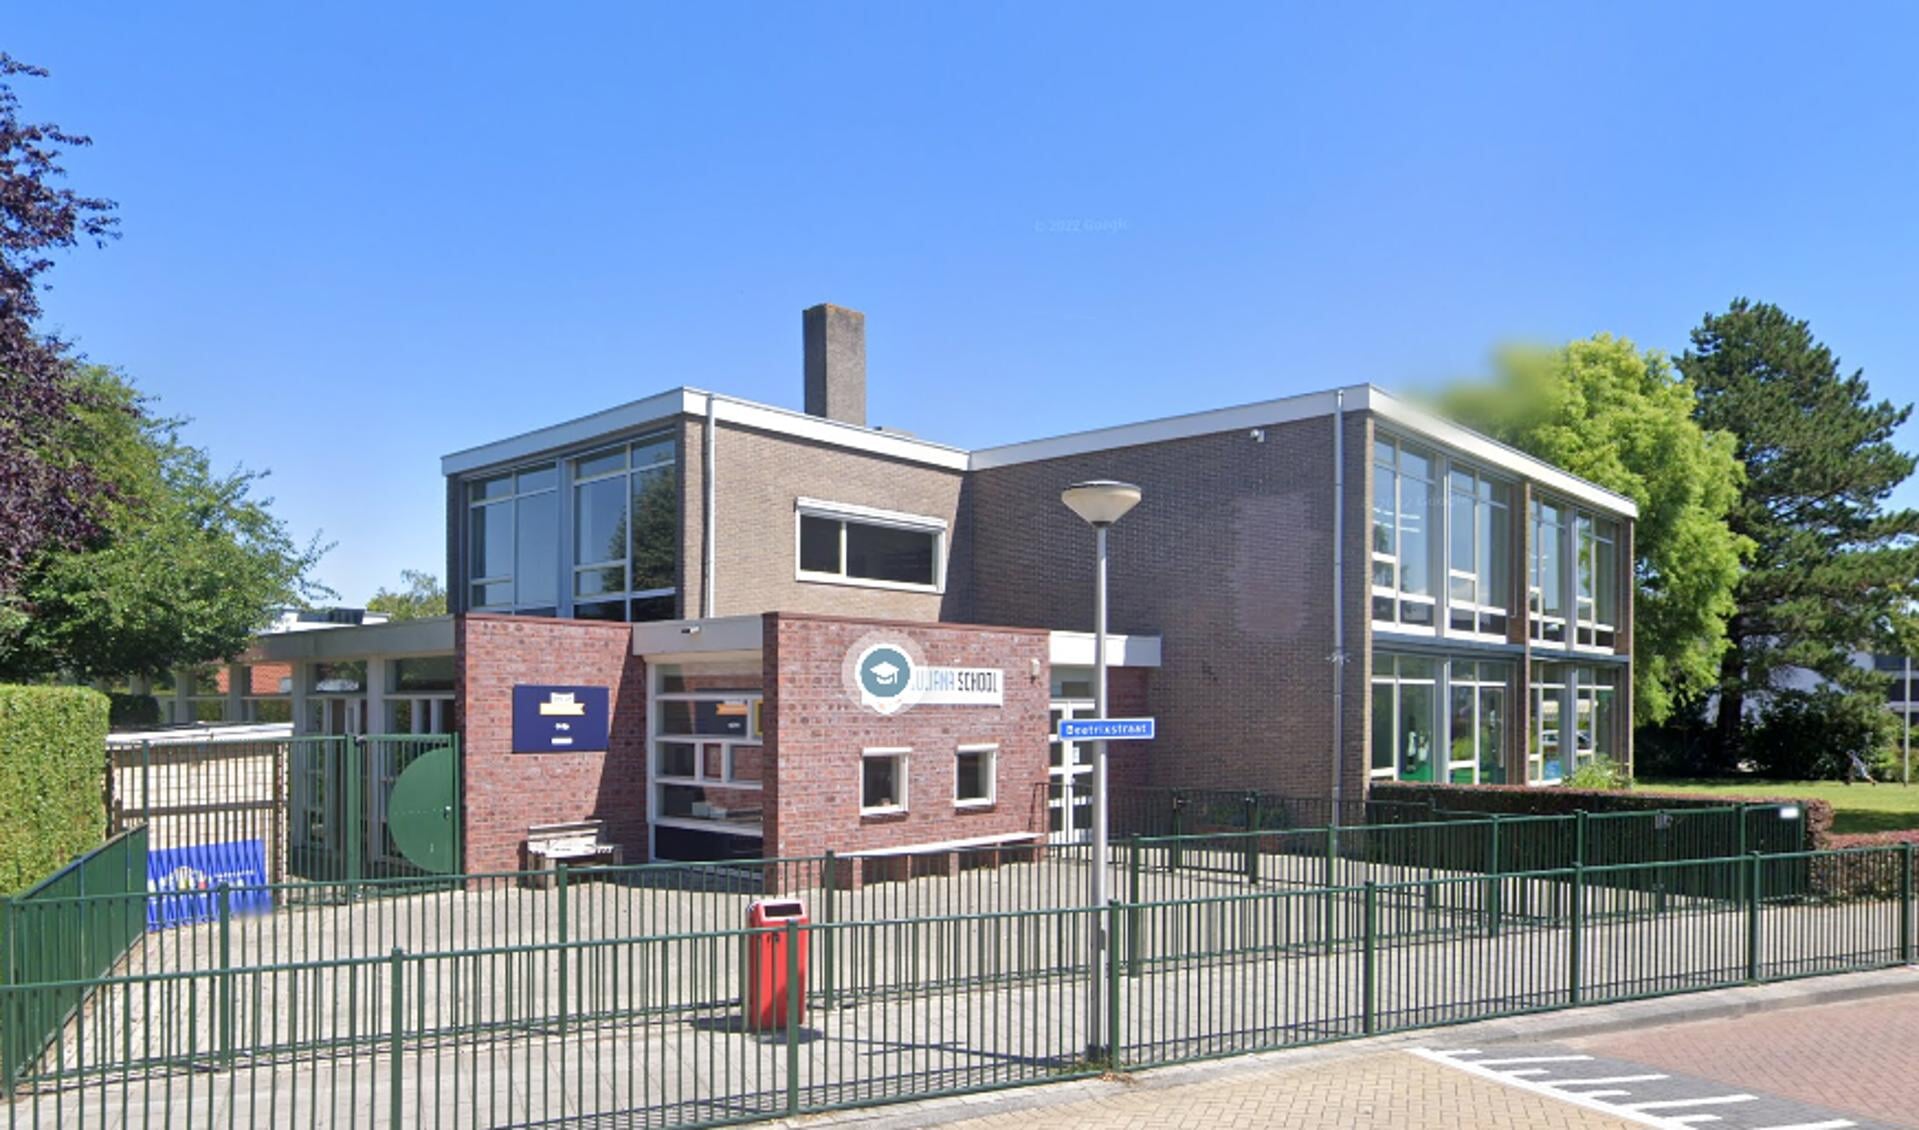 Julianaschool aan de Julianastraat in Rhoon.